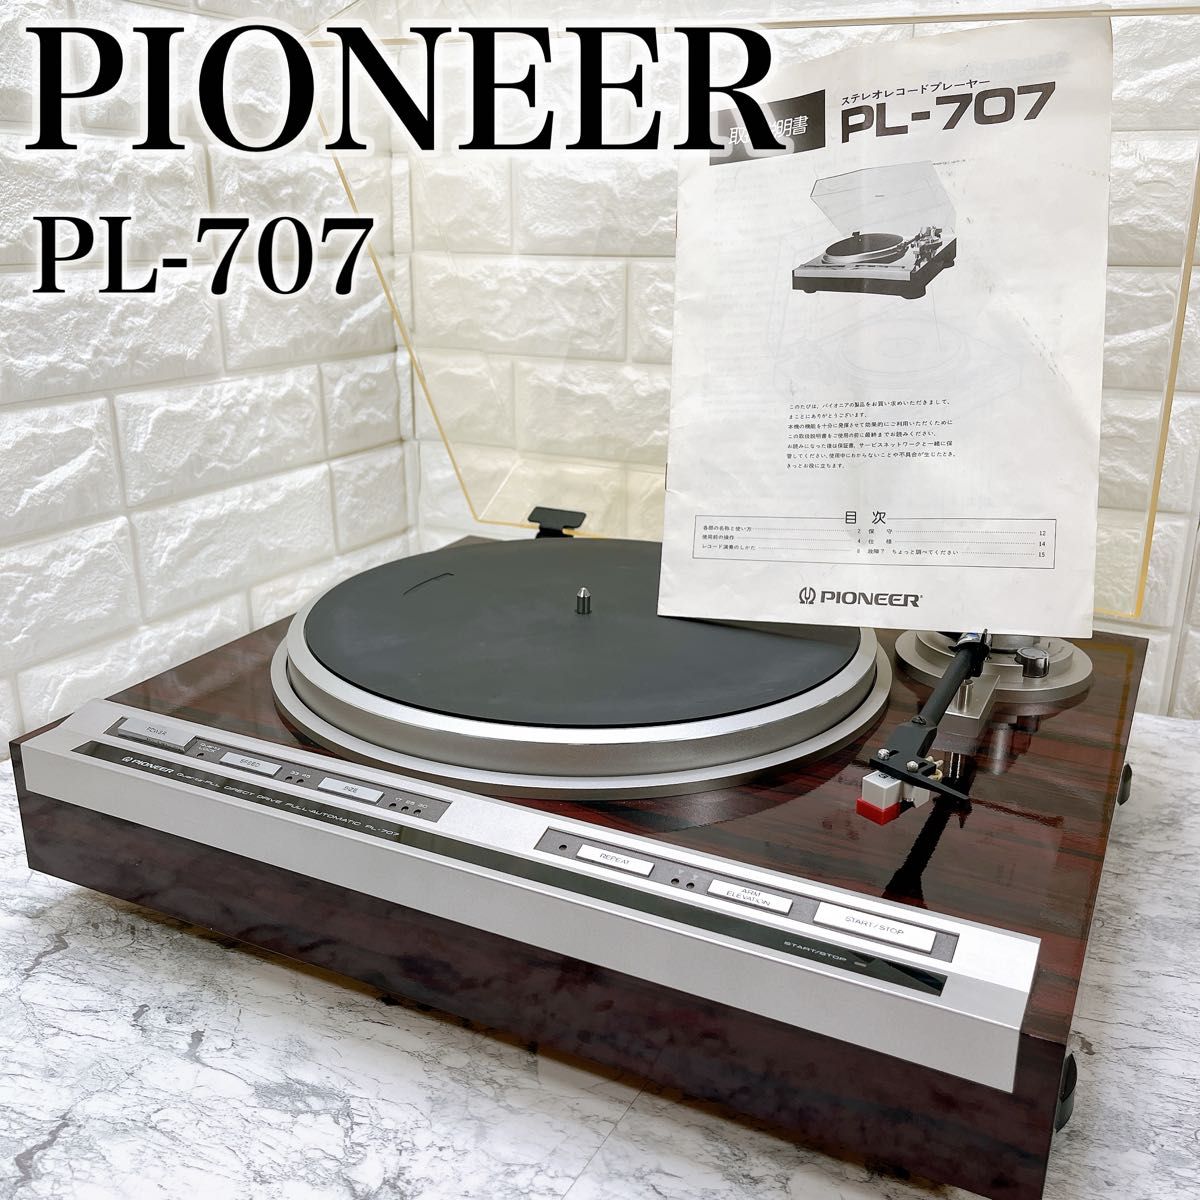 パイオニア PL-707 ダイレクトドライブ フルオートレコードプレーヤー 取説付属 Pioneer ターンテーブル